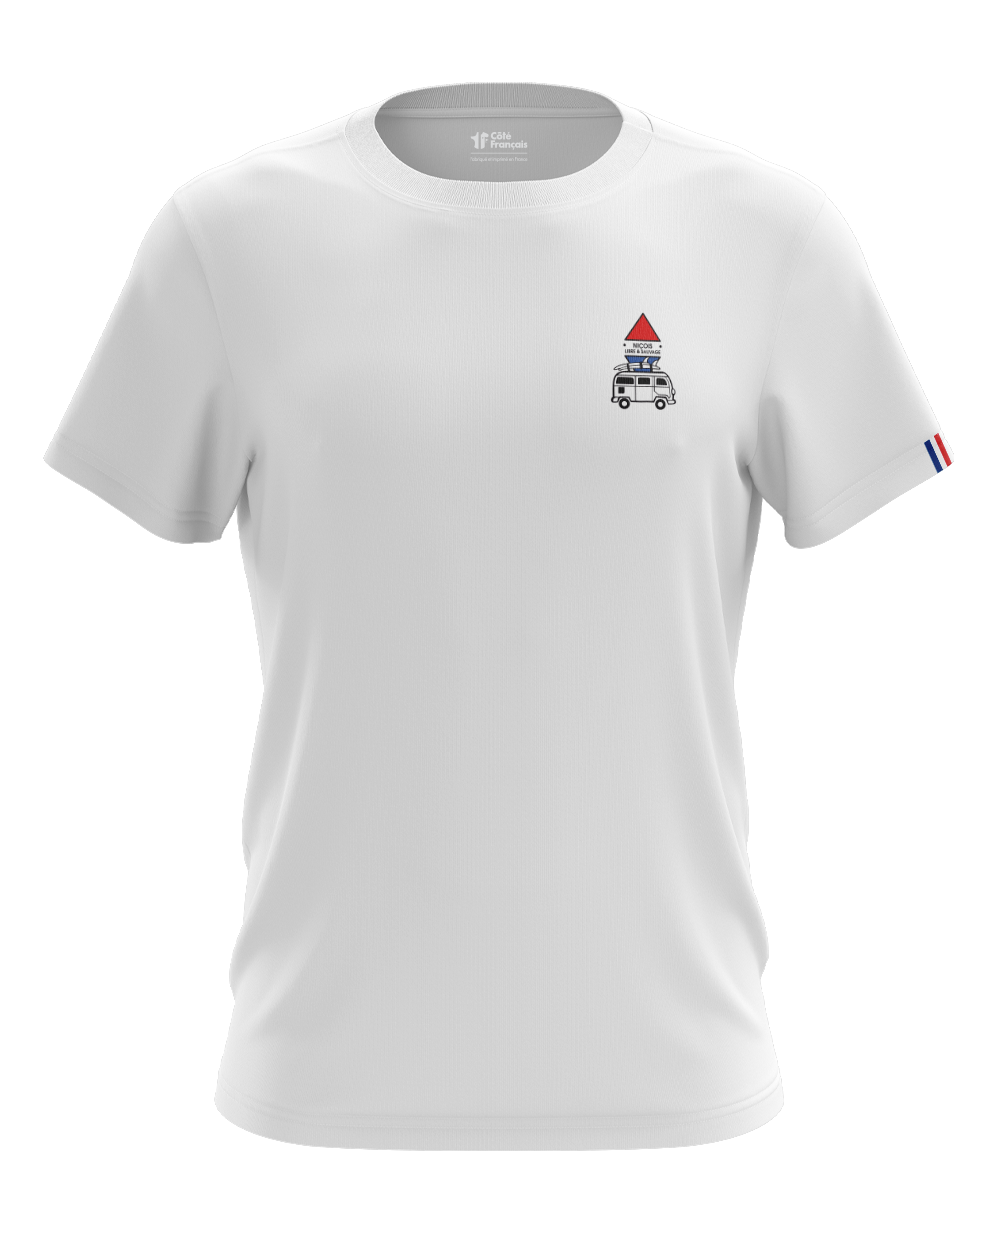 T-Shirt "Niçois libre & sauvage" - blanc